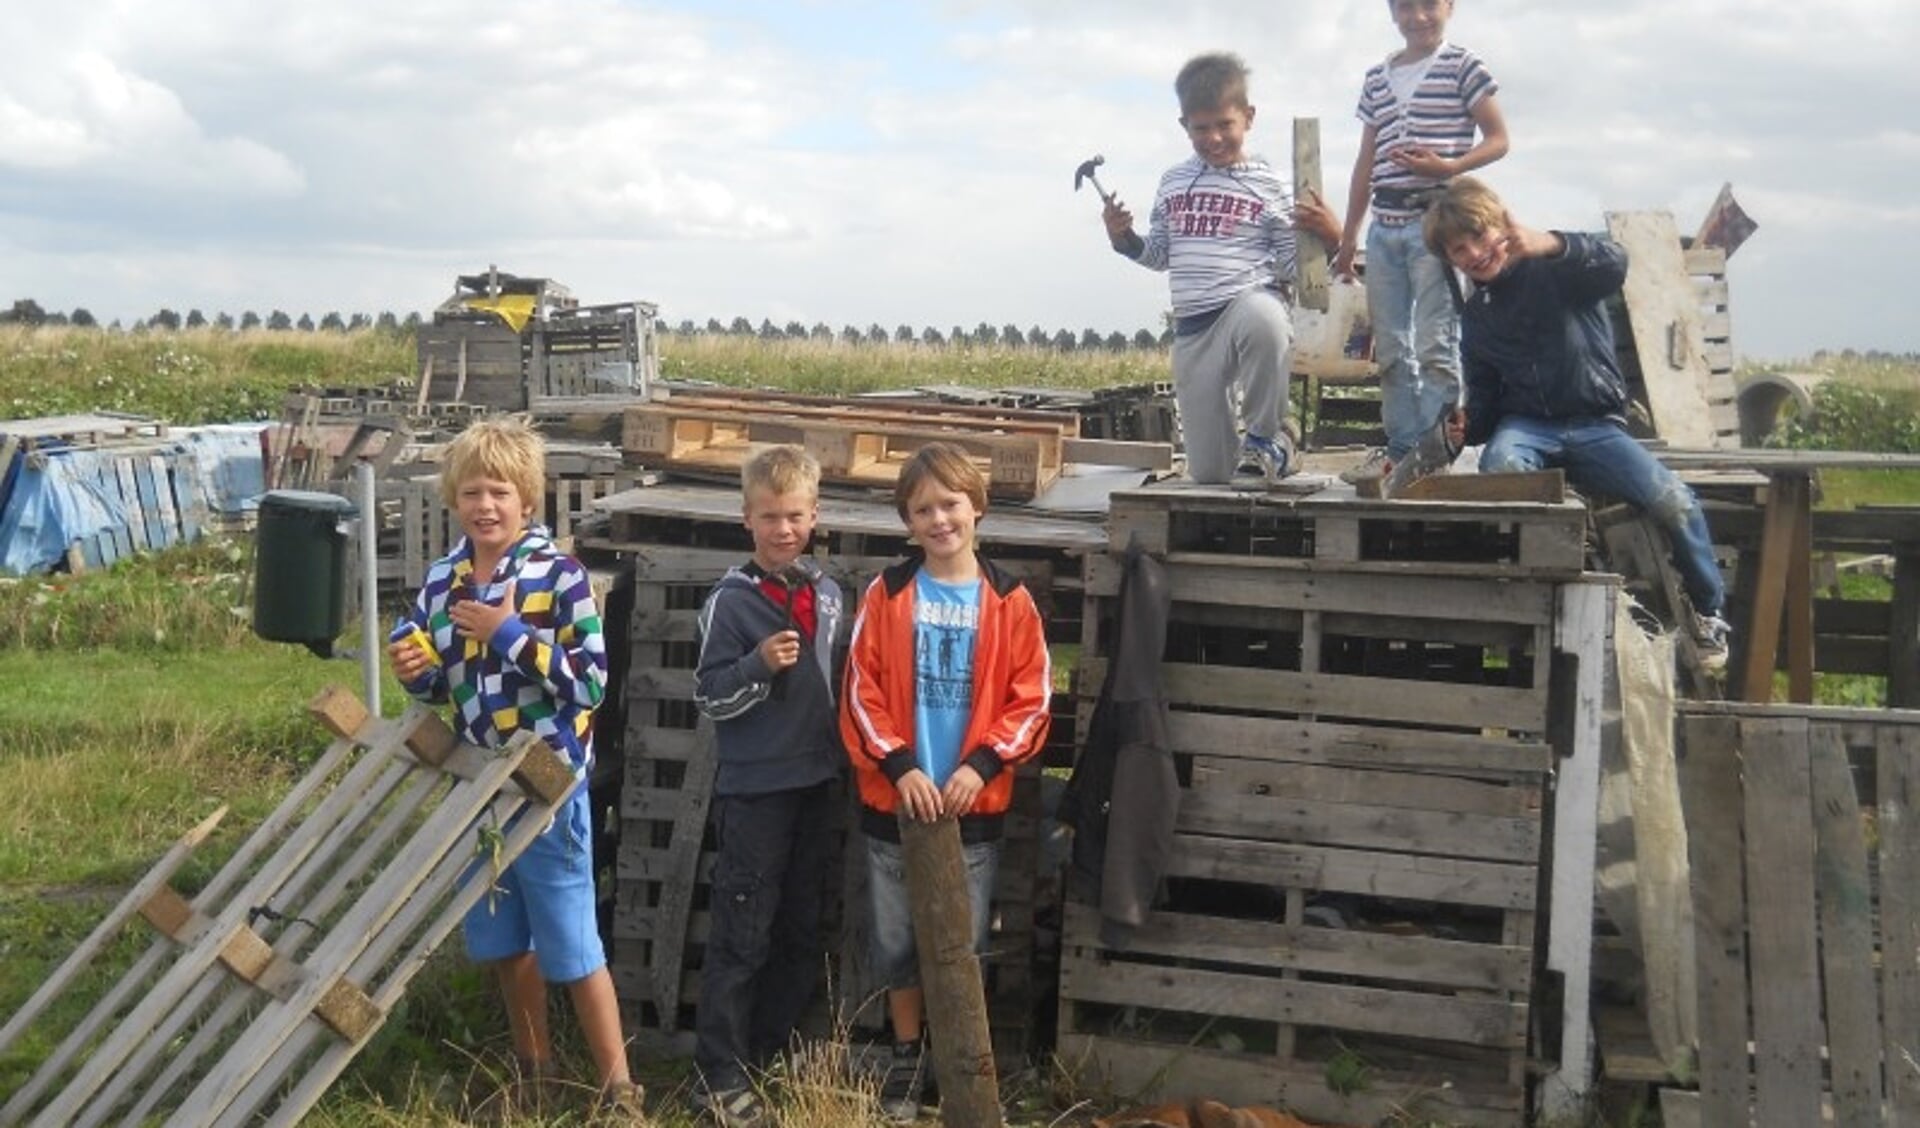 De jeugd kan volgende week weer meedoen aan de huttenbouw driedaagse op Jeugdland in Nieuw-Vennep. 